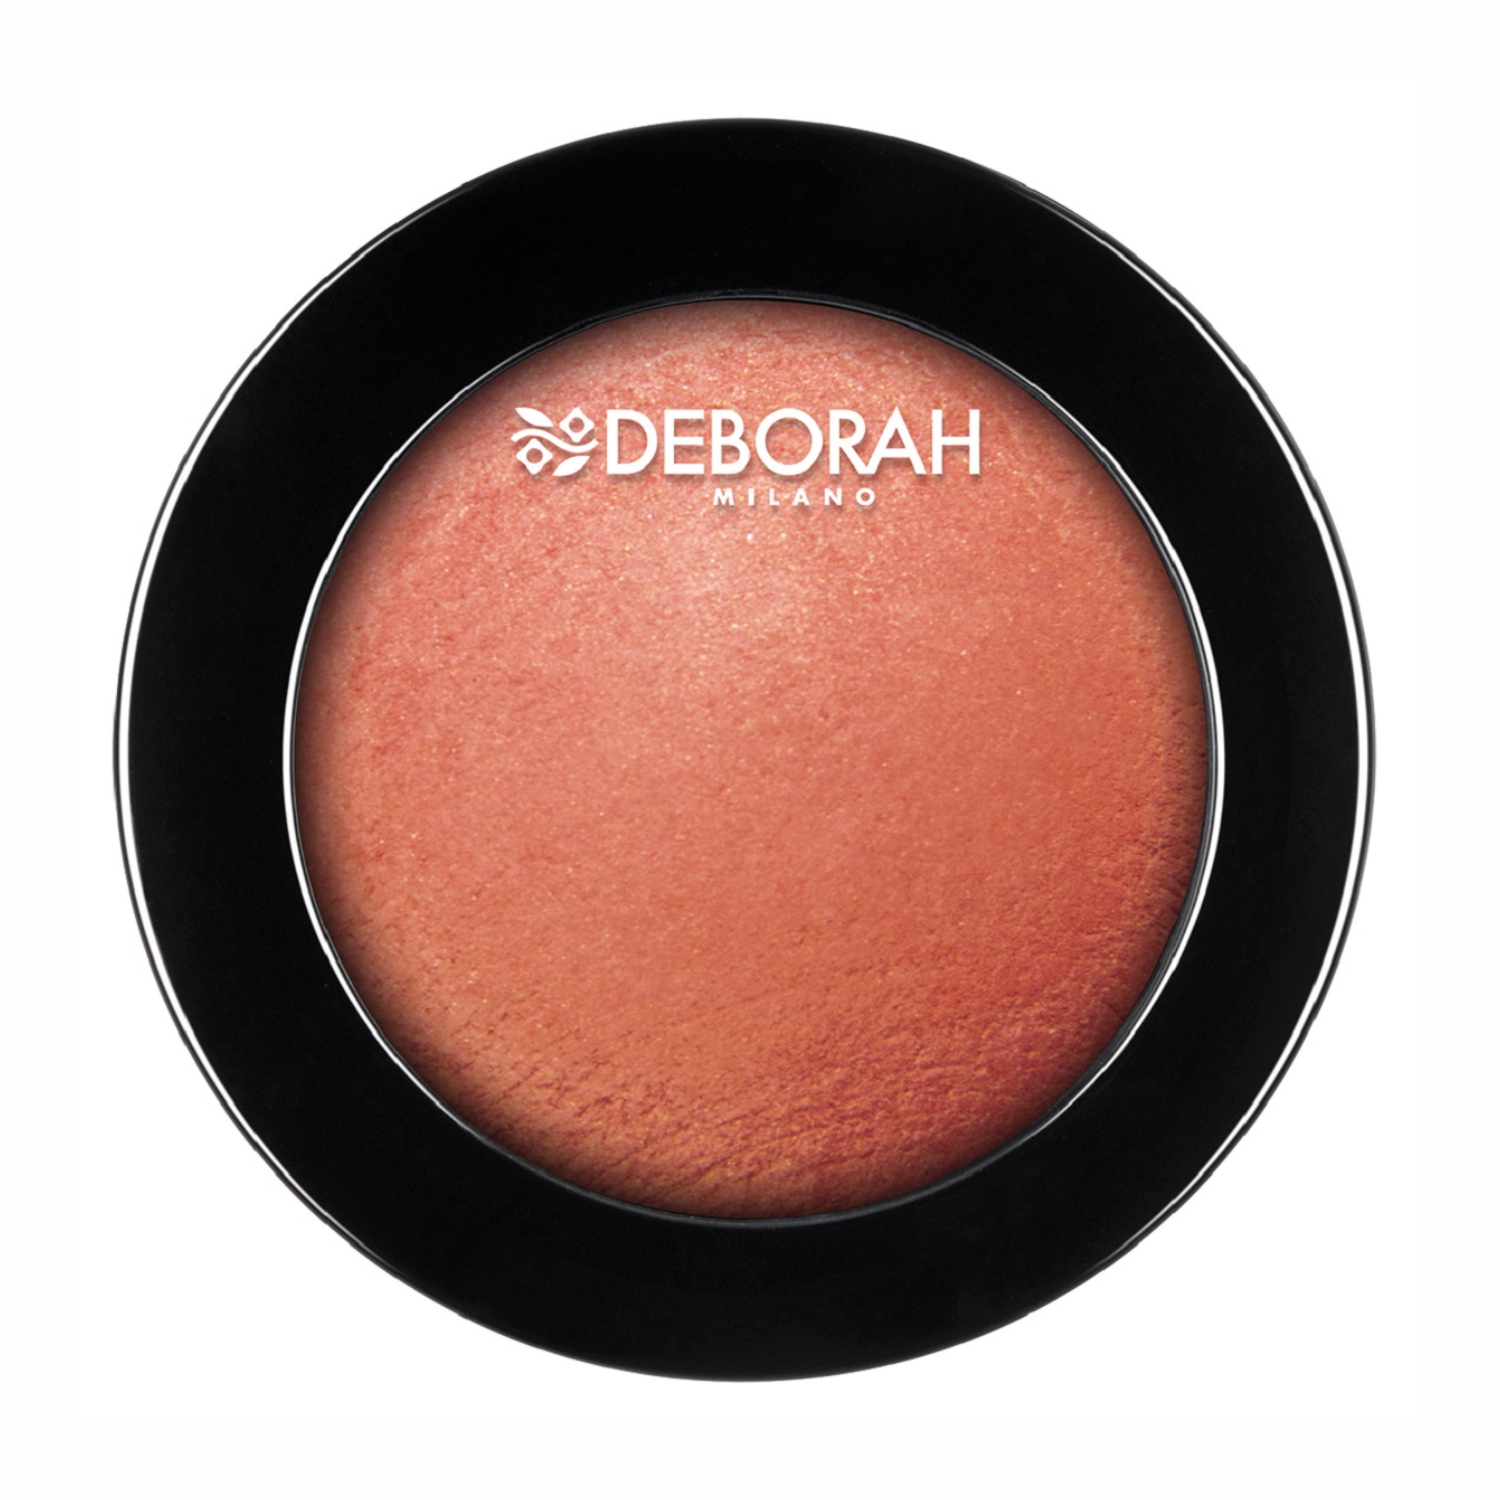 Deborah Milano Hi-Tech Blush , 4gm-63 Apricot